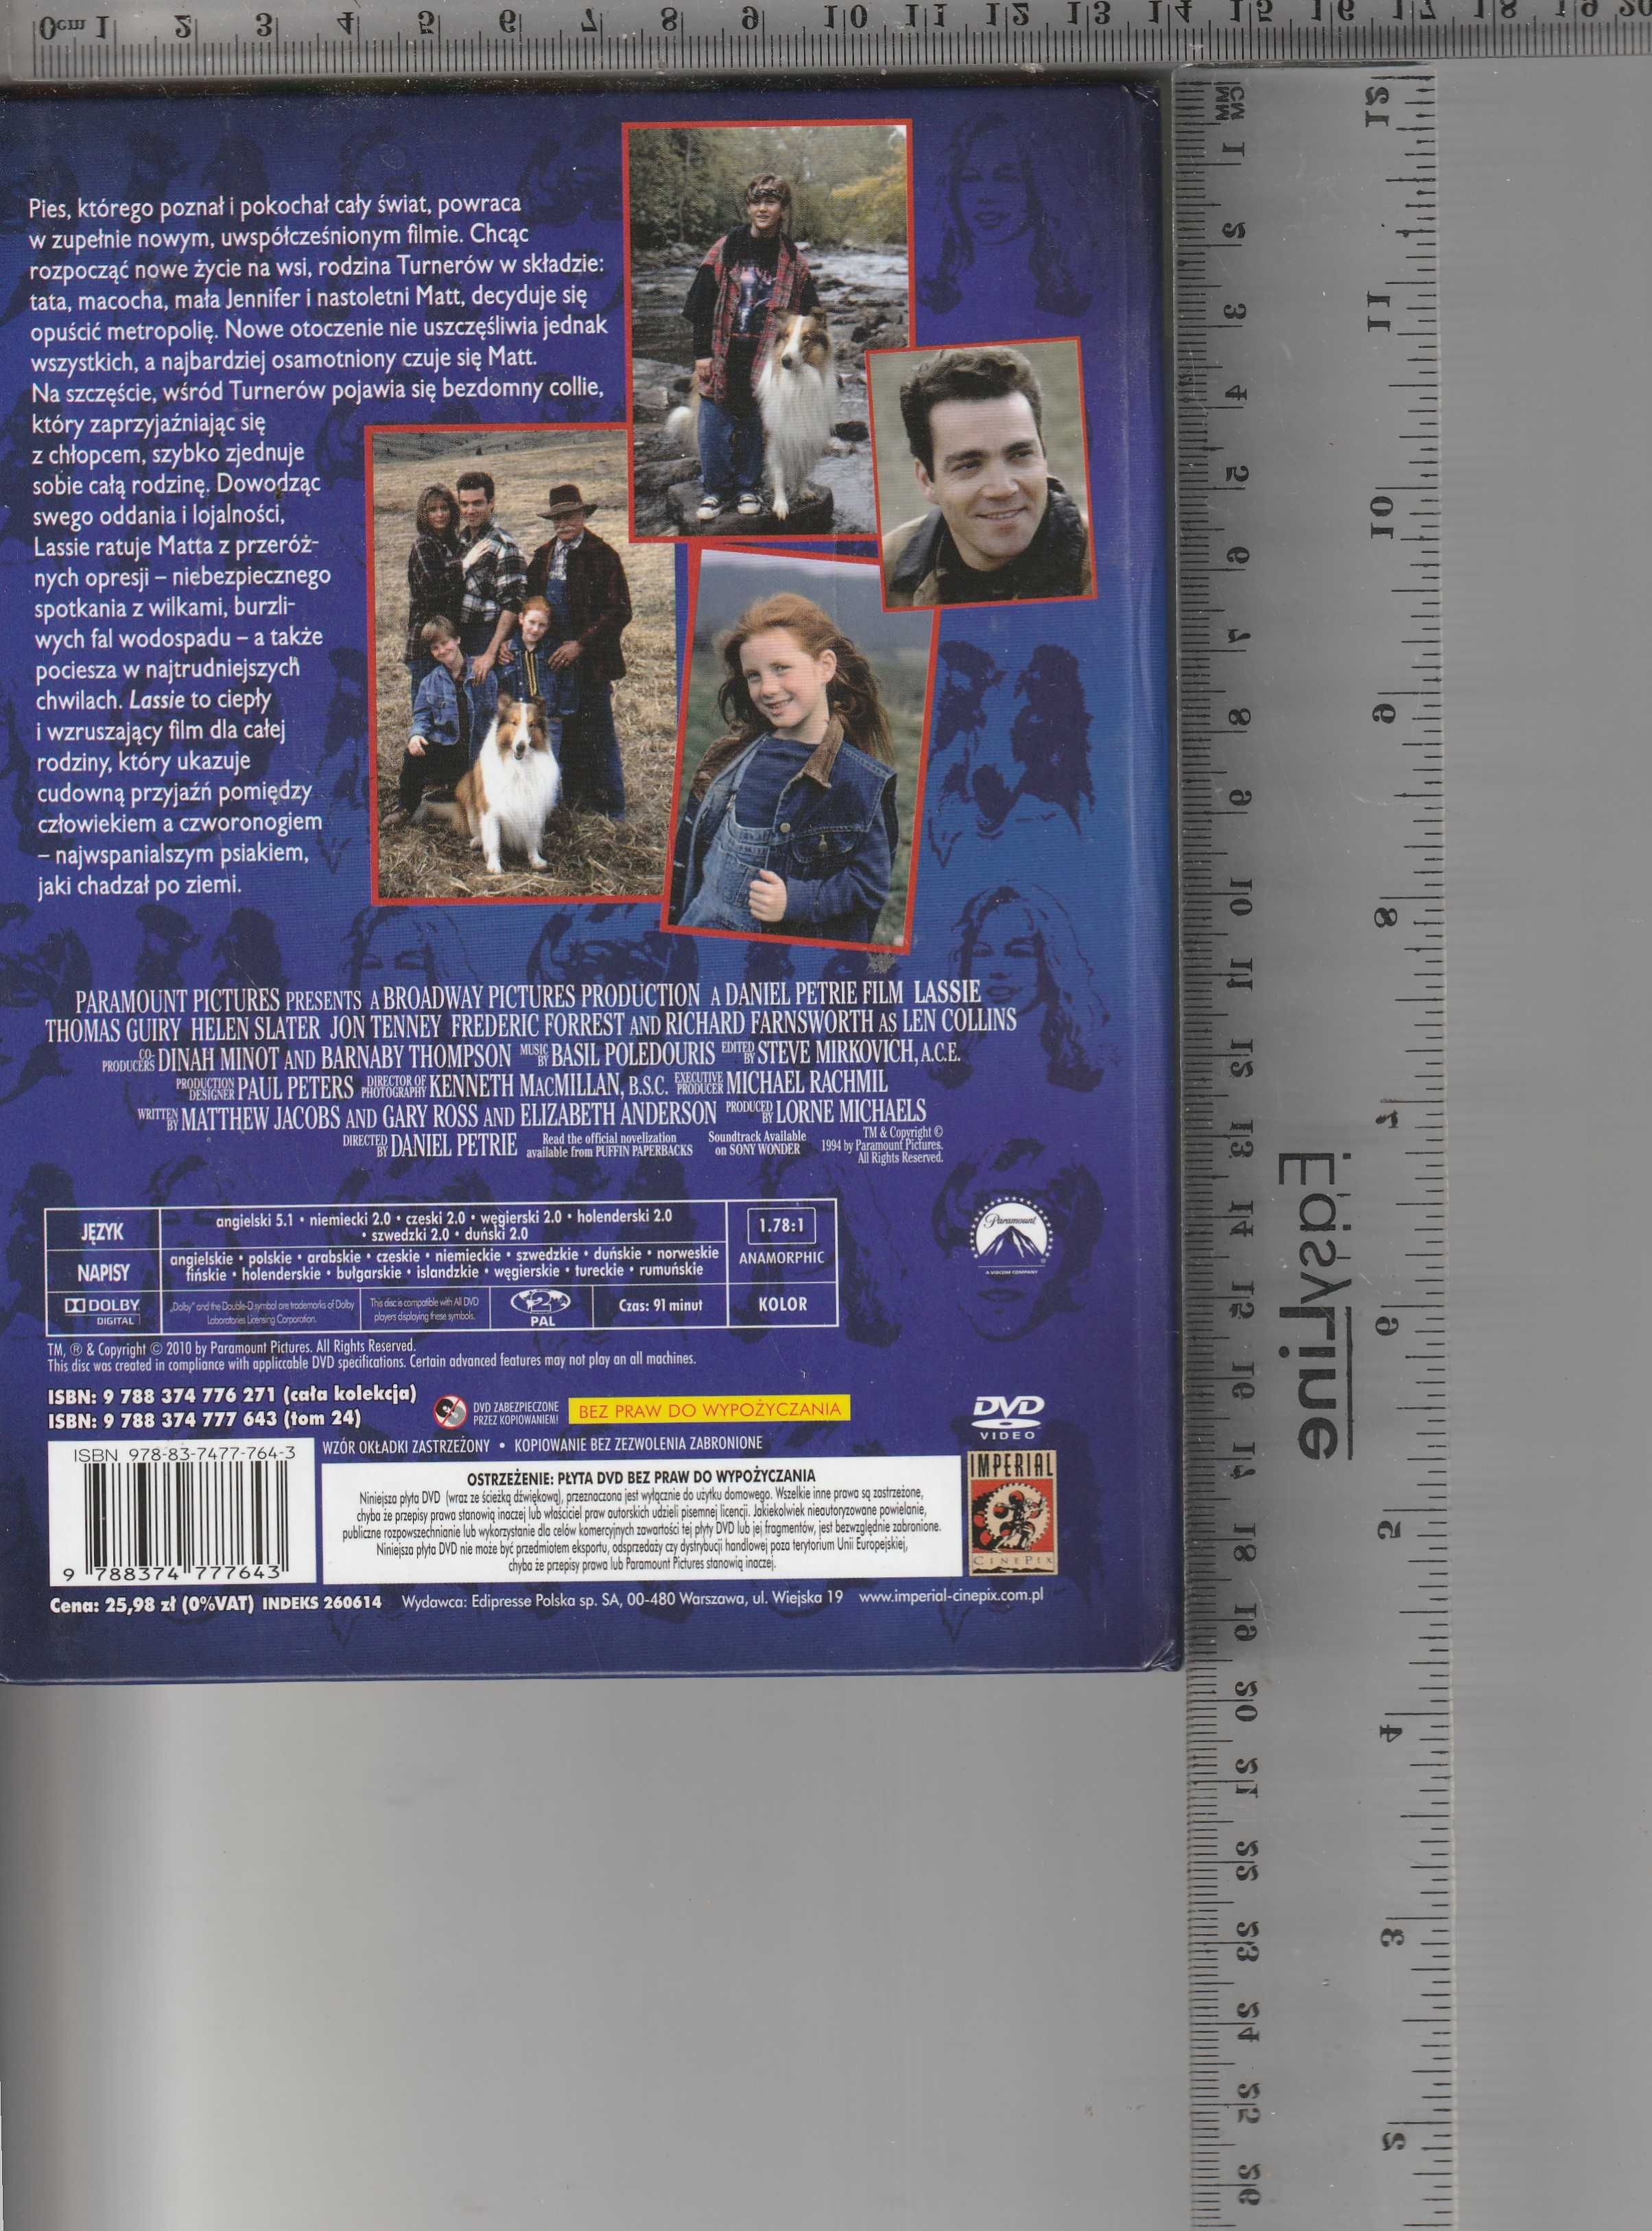 Lassie Kino familijne DVD